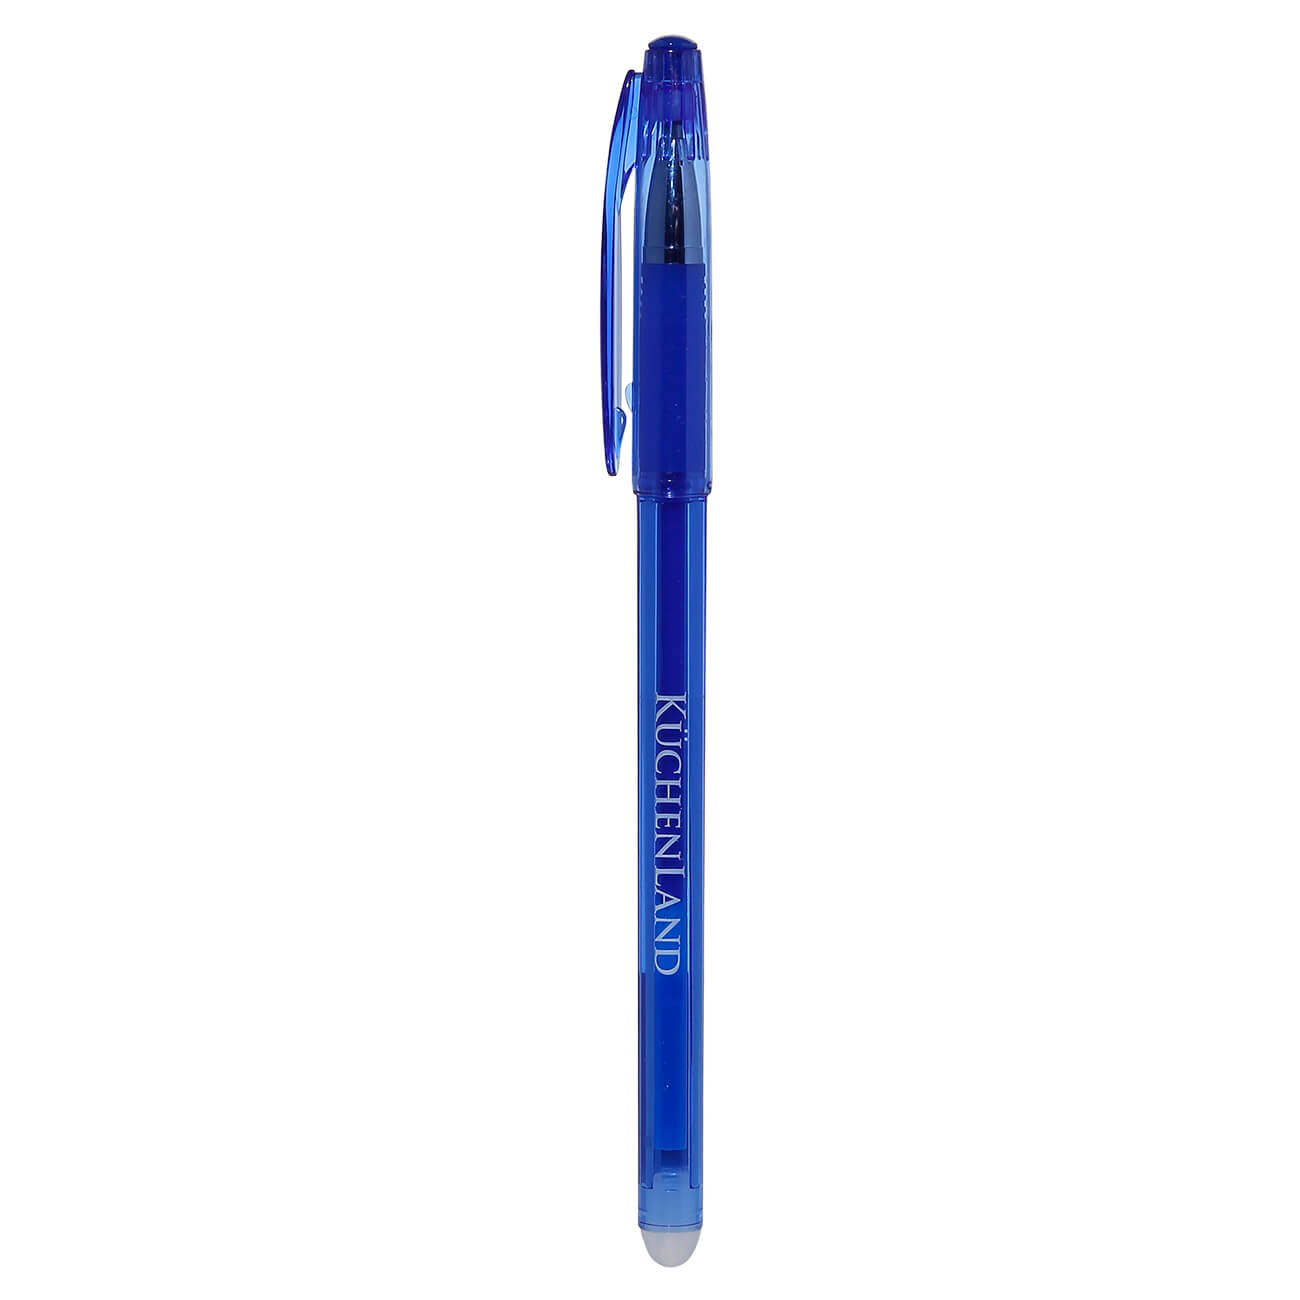 Ручка гелевая, 15 см, стираемые чернила, синяя, Draw гелевая ручка hatber